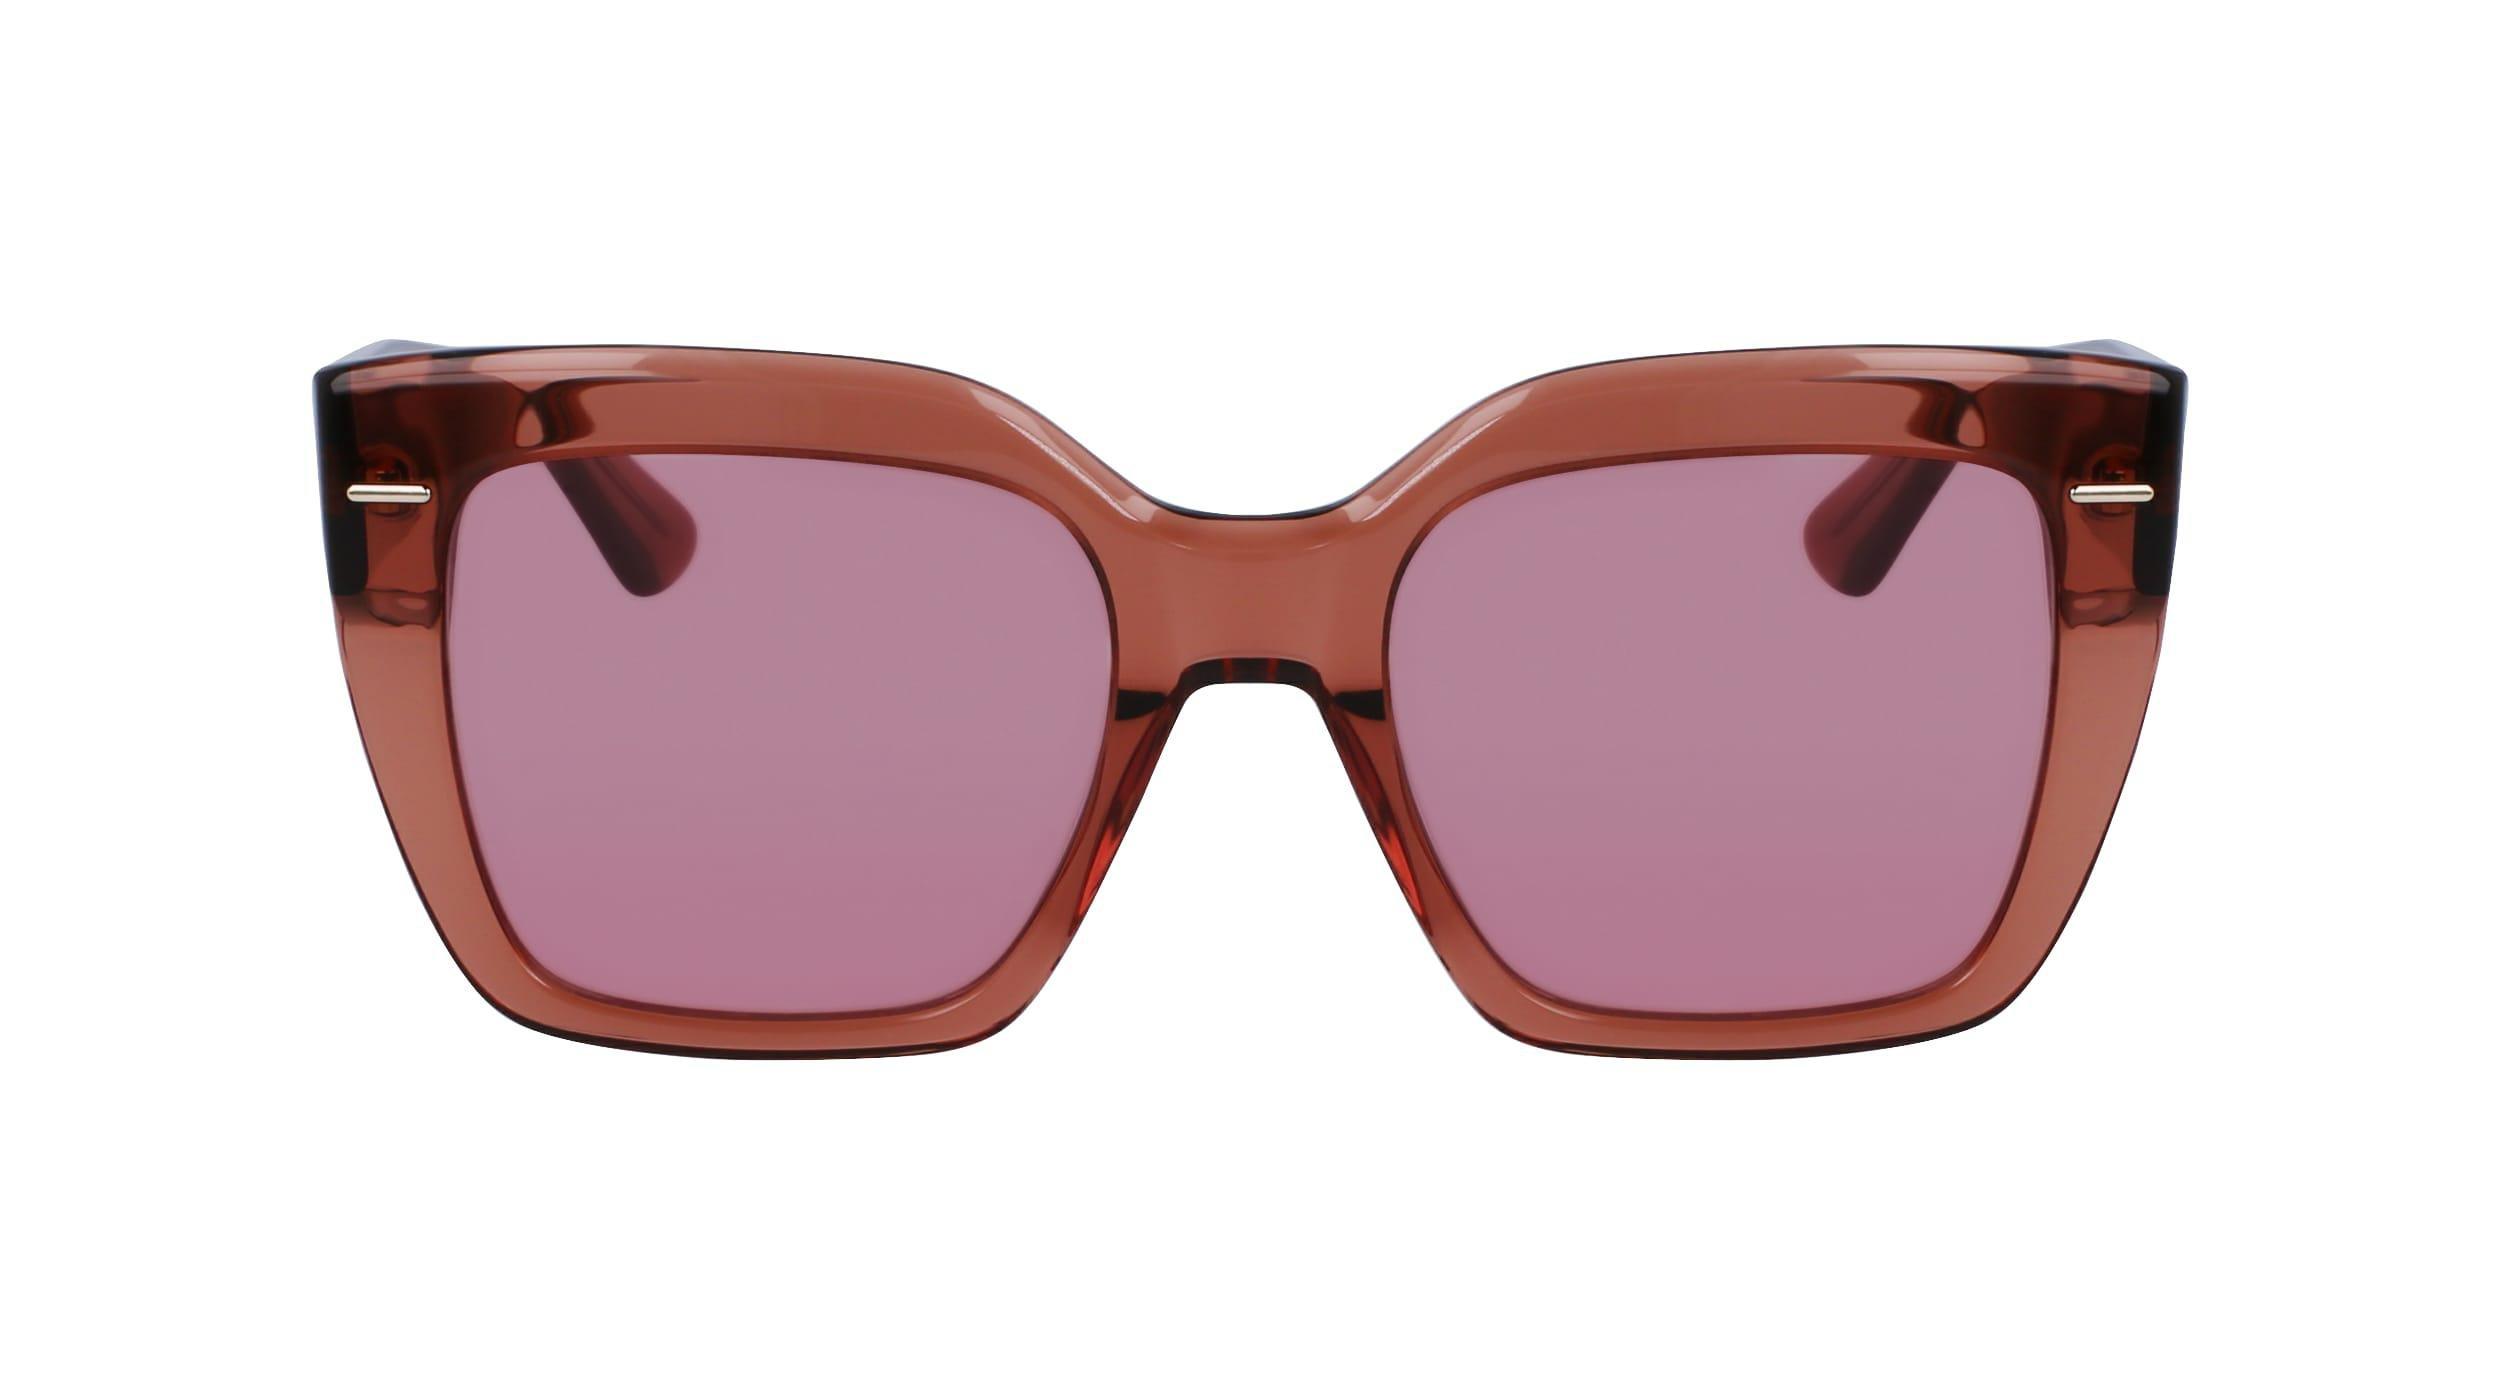 Calvin Klein - Calvin Klein Women Brown Modified Rectangle Sunglasses - Ck23508S